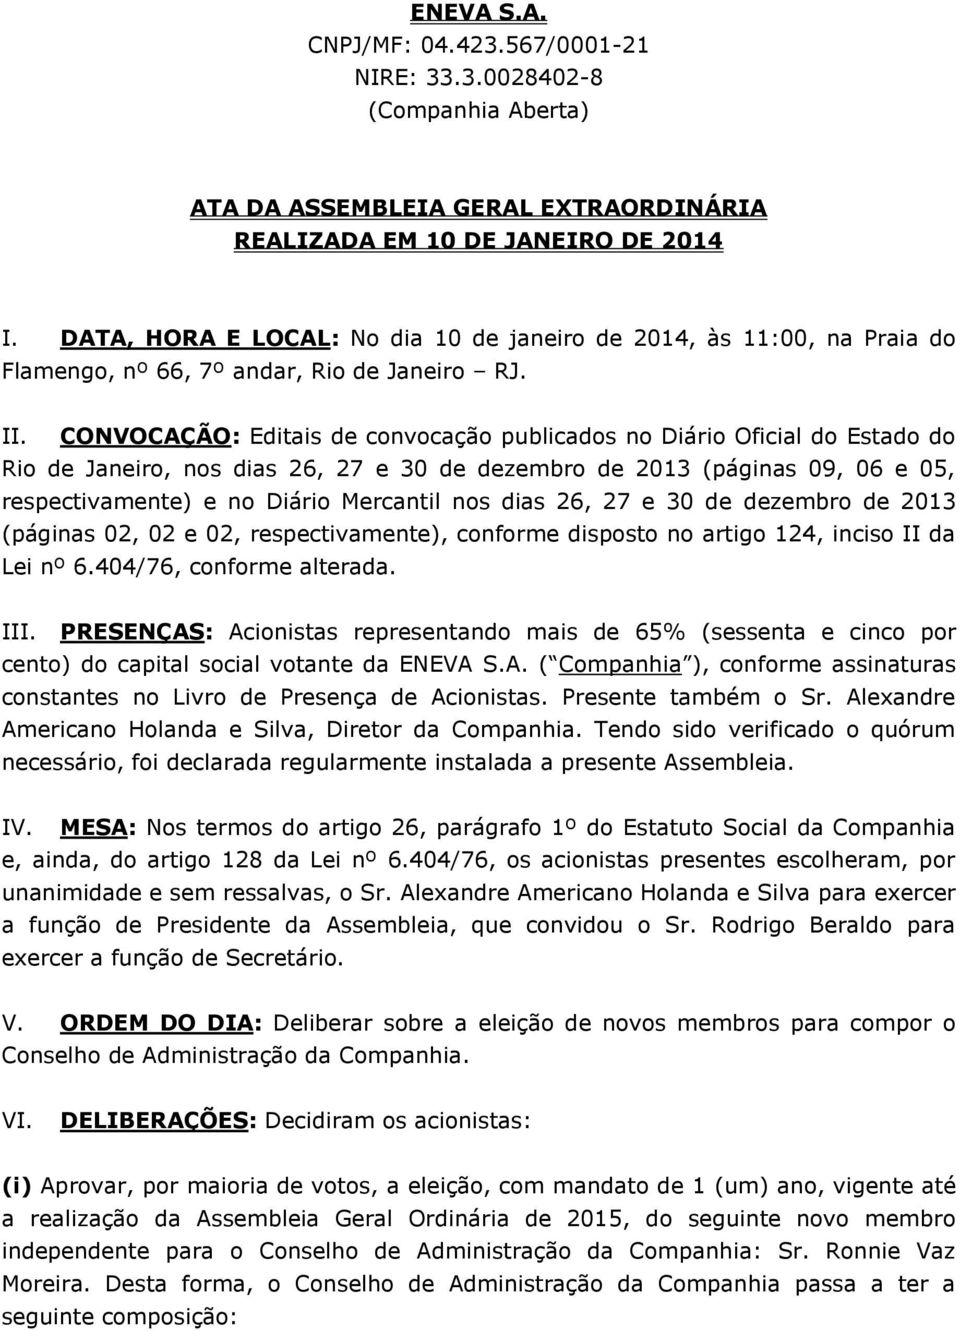 CONVOCAÇÃO: Editais de convocação publicados no Diário Oficial do Estado do Rio de Janeiro, nos dias 26, 27 e 30 de dezembro de 2013 (páginas 09, 06 e 05, respectivamente) e no Diário Mercantil nos